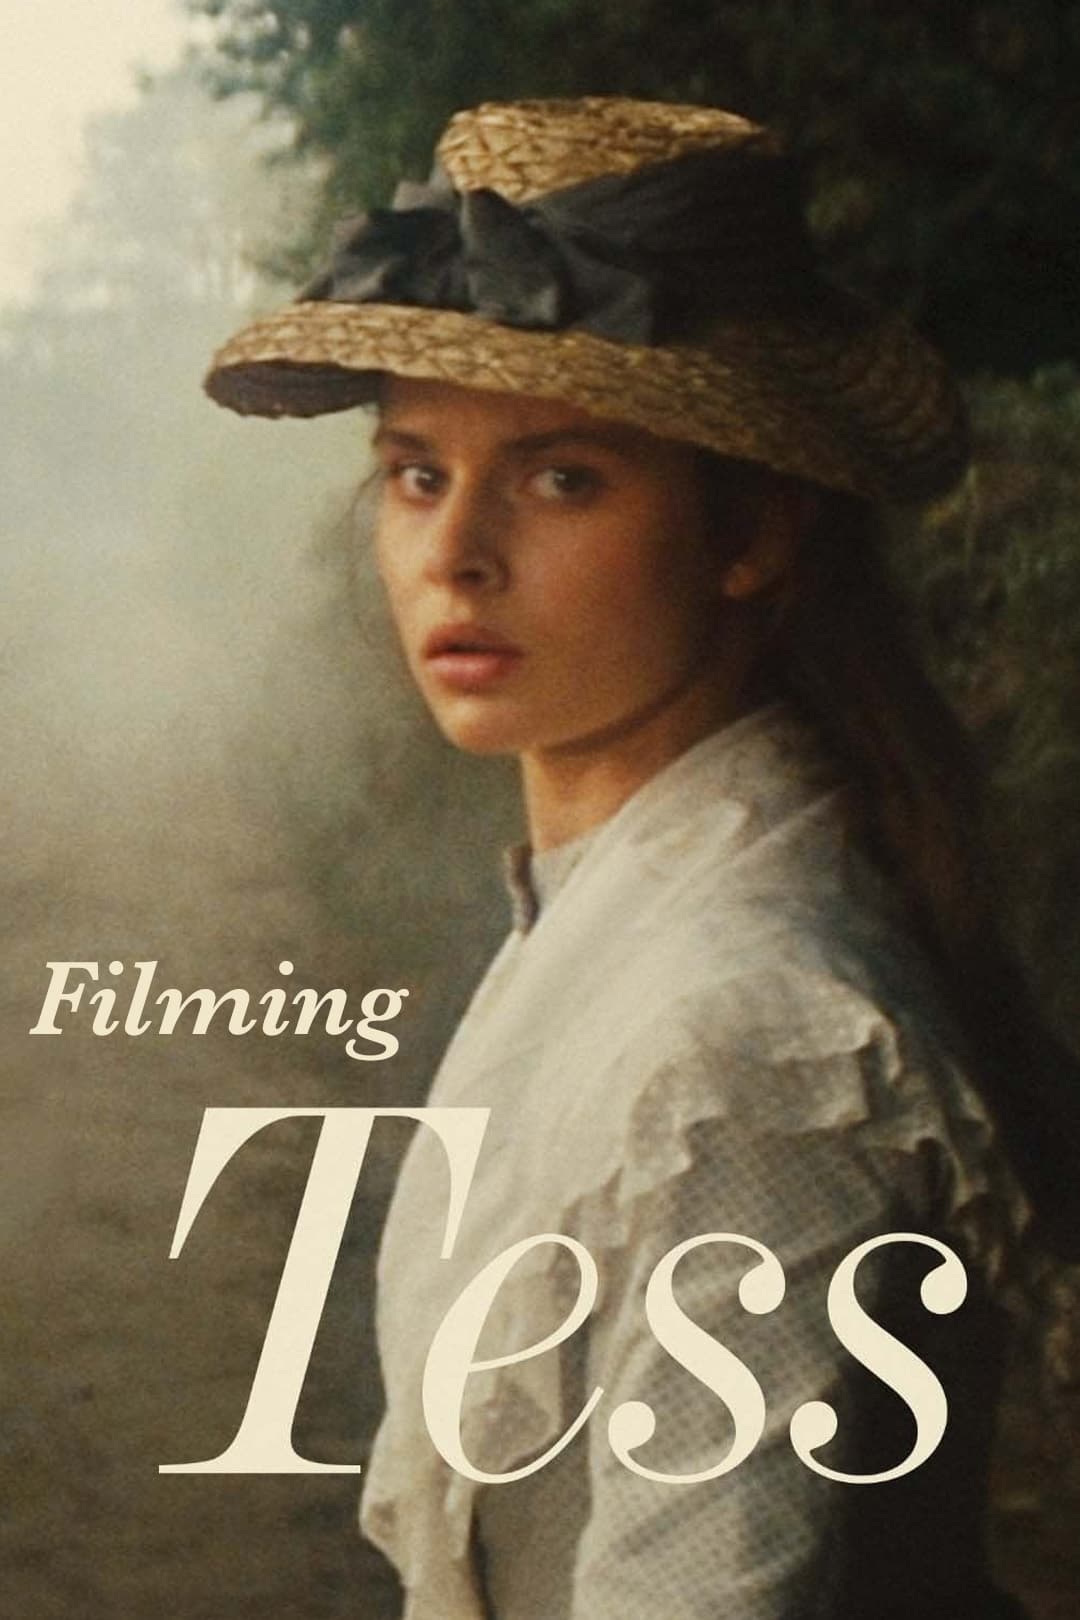 Filming 'Tess'